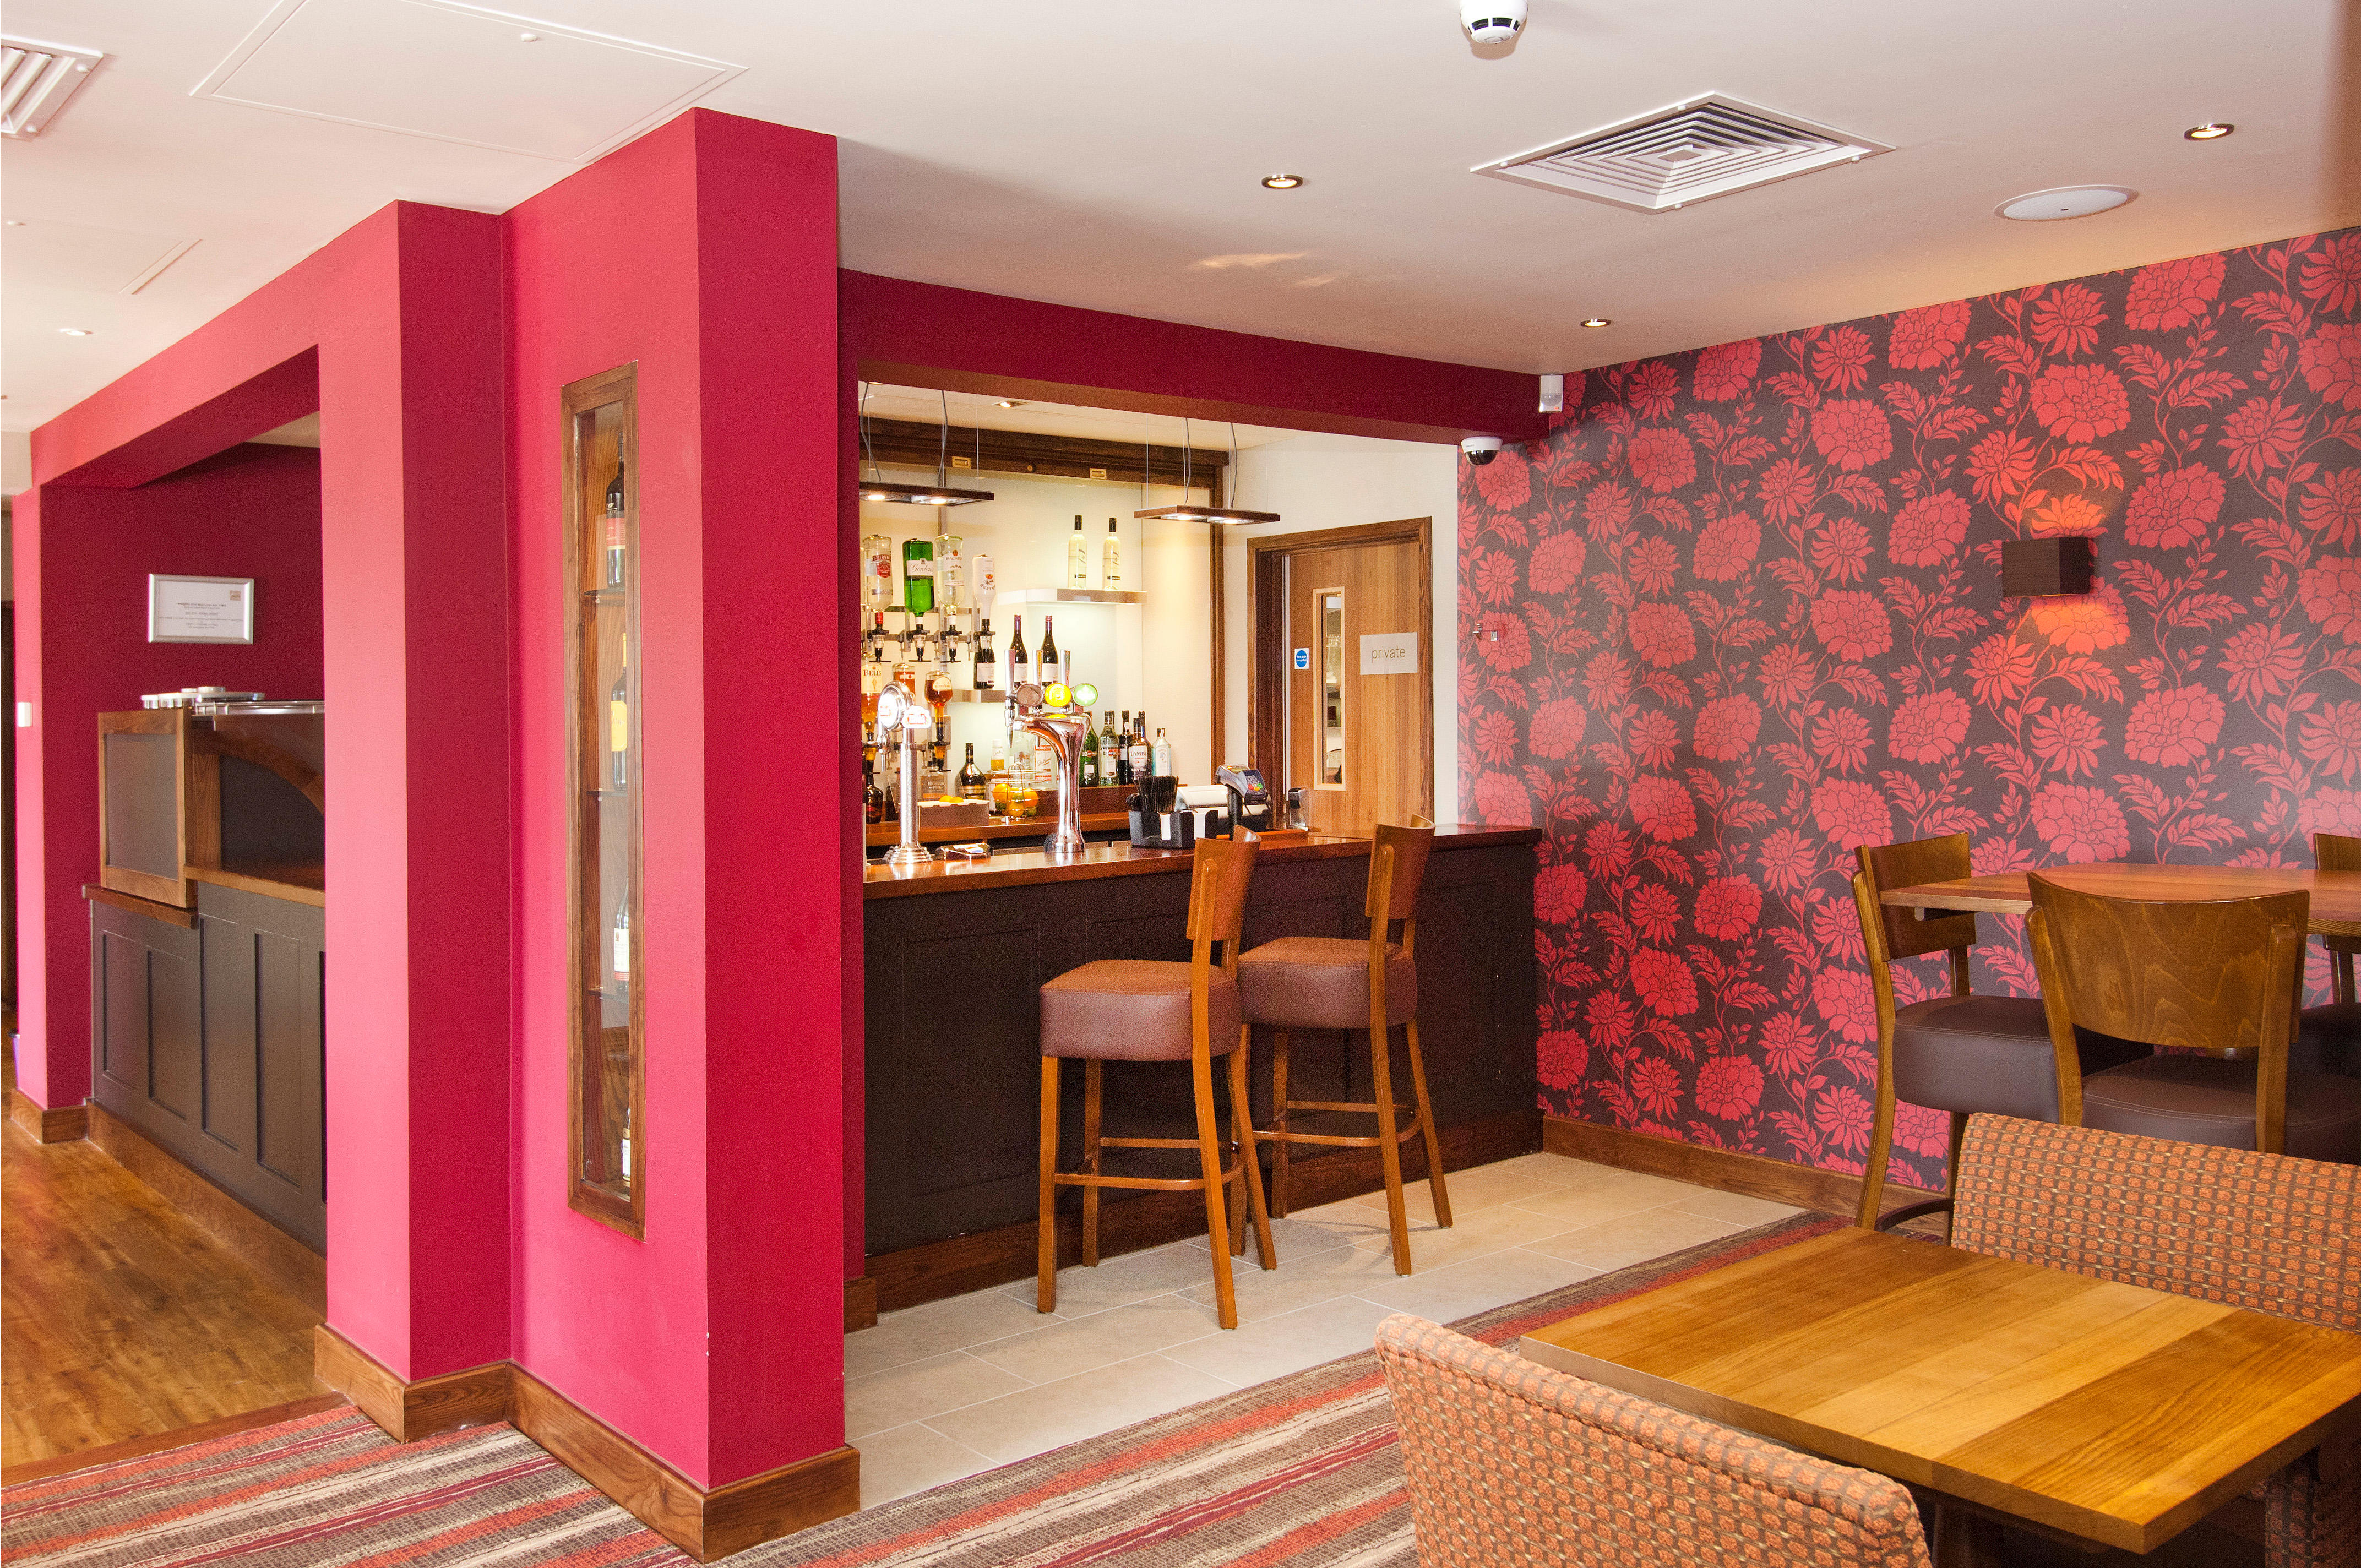 Thyme restaurant Premier Inn Southampton West Quay hotel Southampton 03333 219233